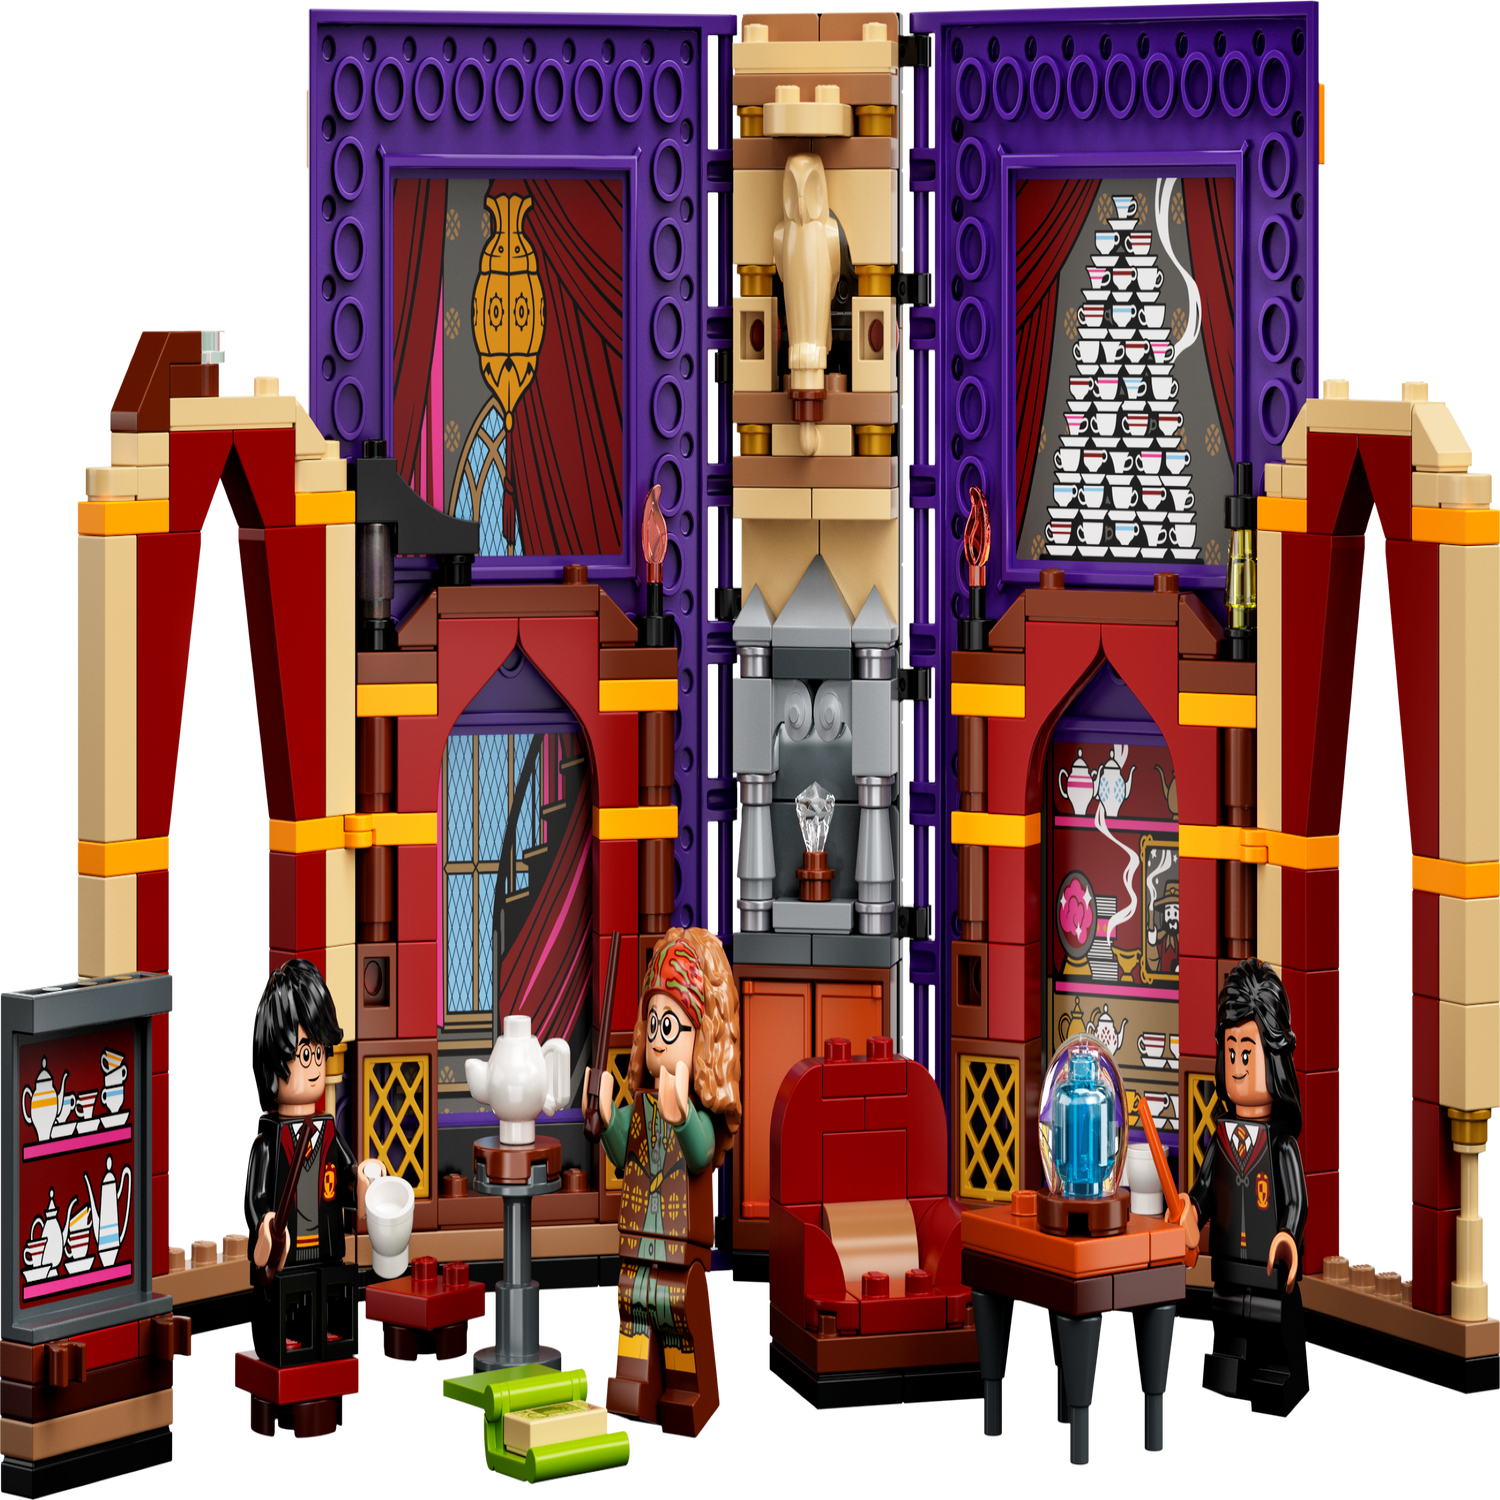 LEGO Harry Potter Momento Hogwarts™: Aula de Adivinhação 76396